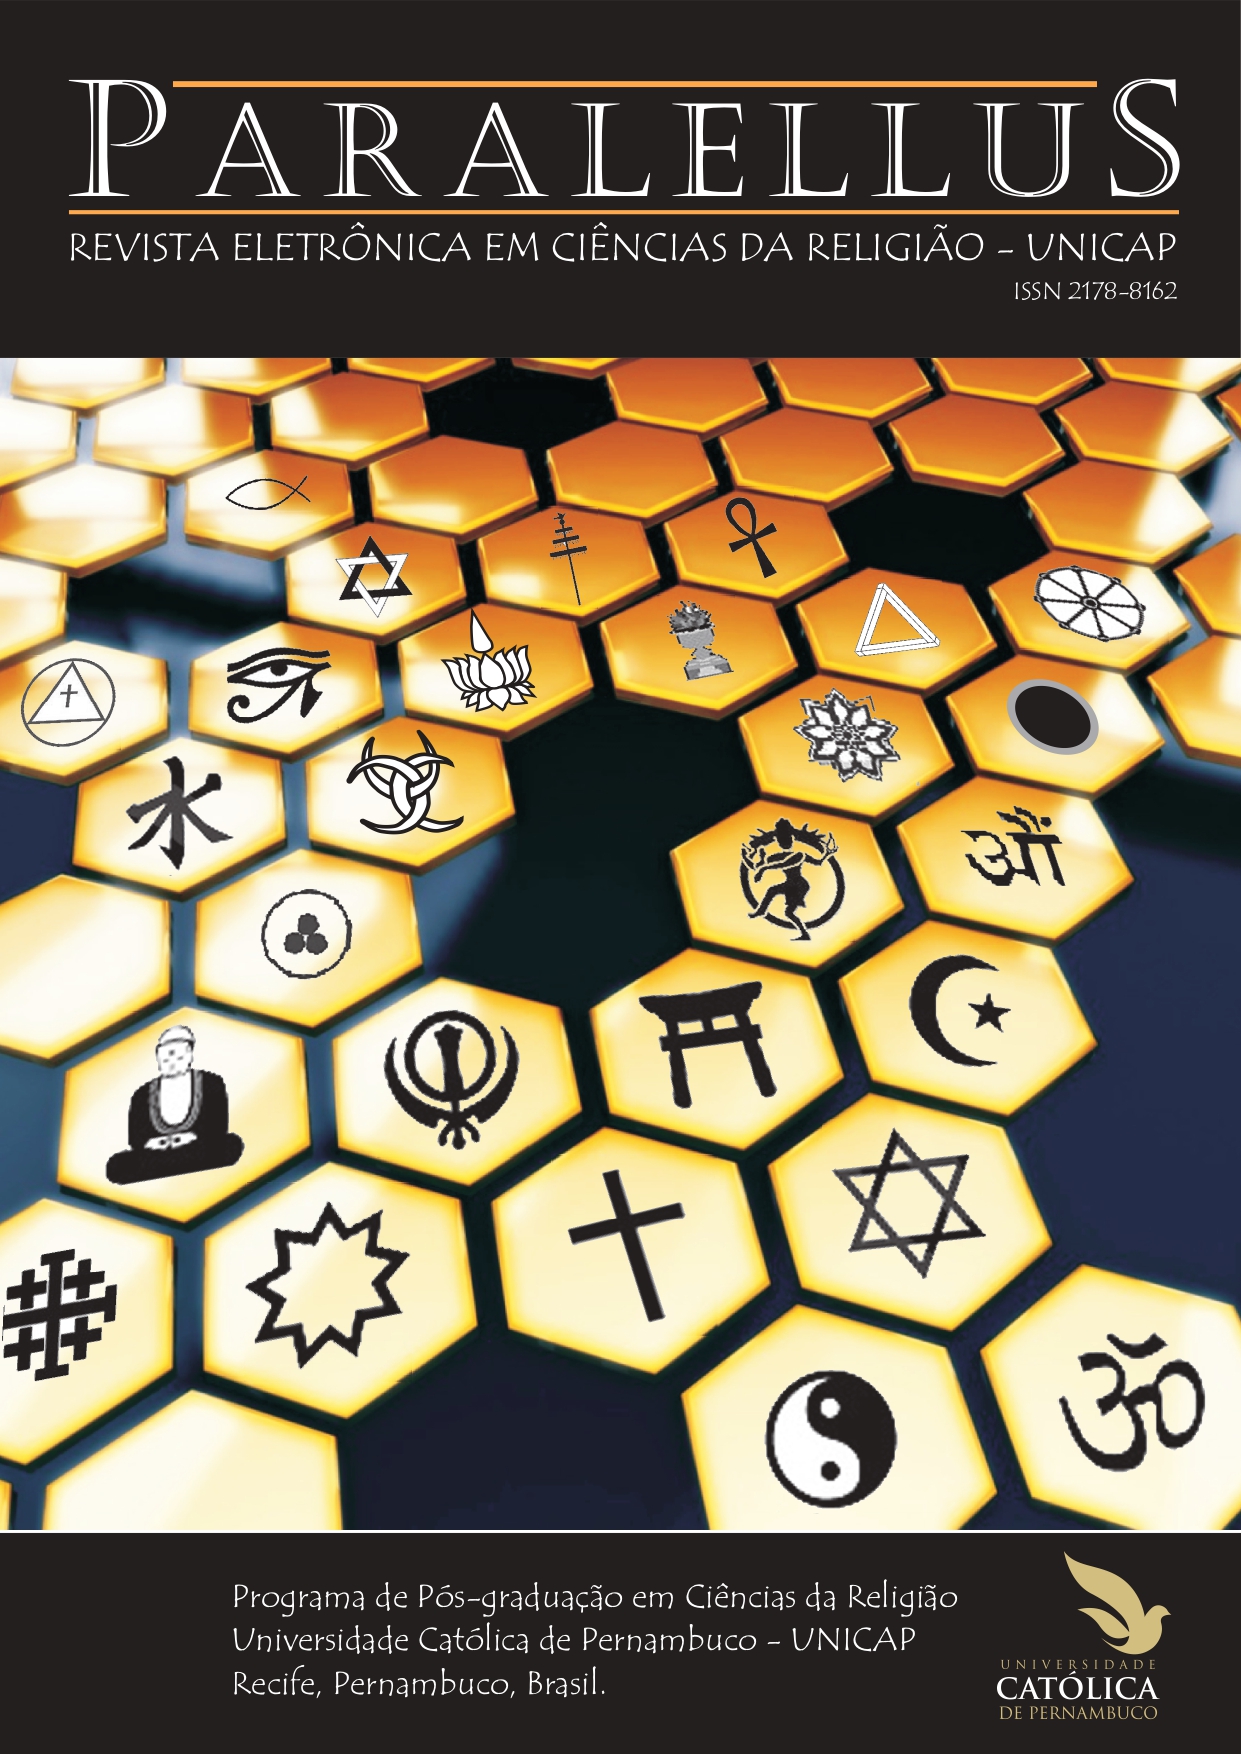 Capa da Revista Paralellus contendo símbolos de algumas religiões dentro de hexágonos